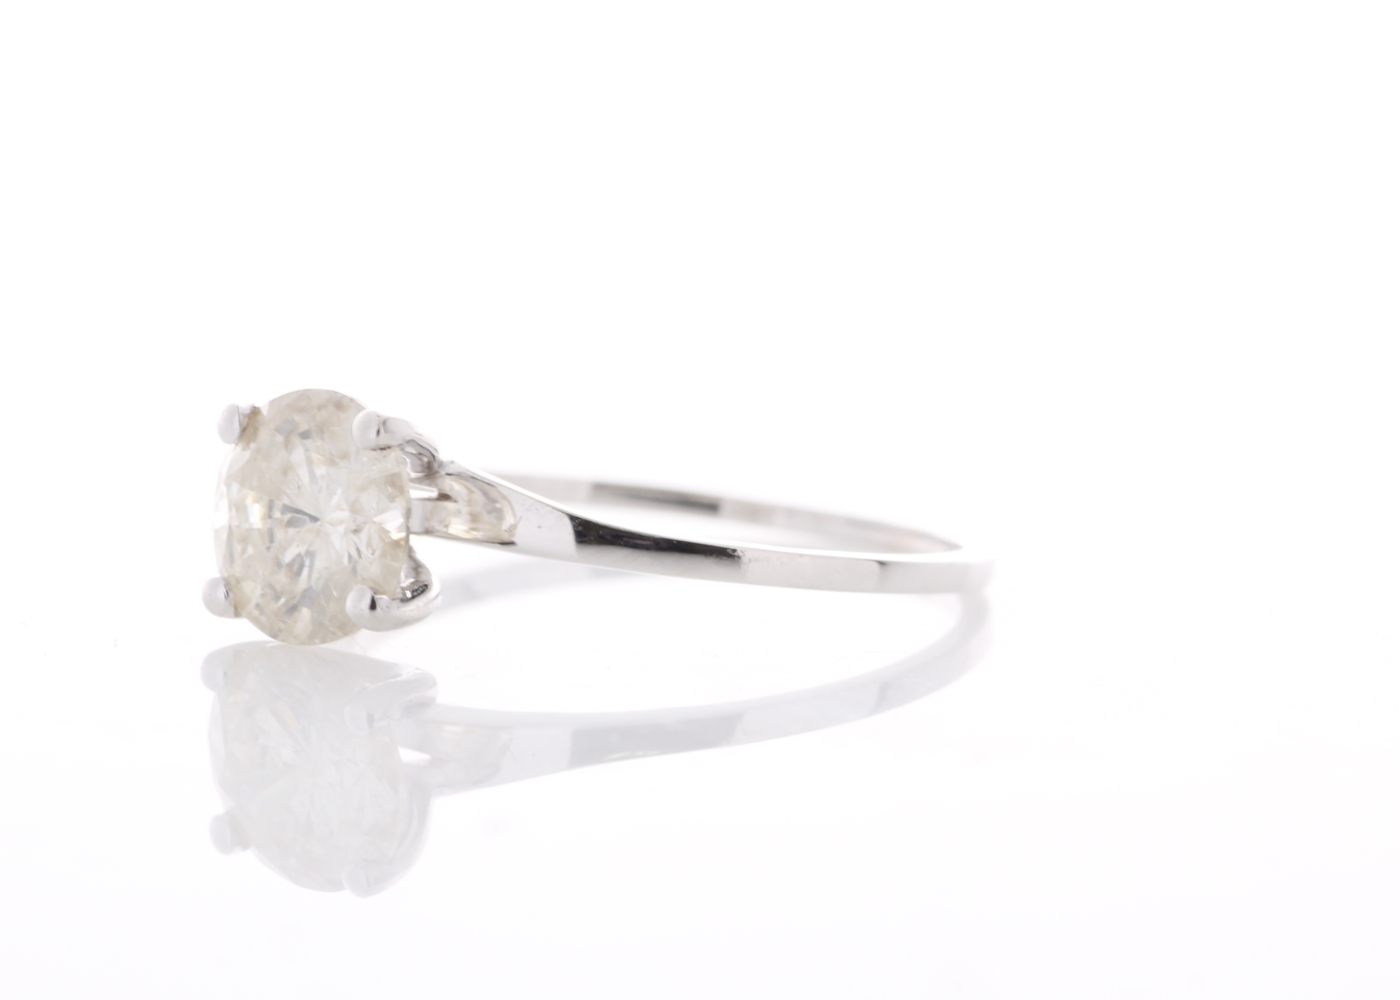 18ct White Gold Rex Set Diamond Ring 1.19 Carats - Image 2 of 5